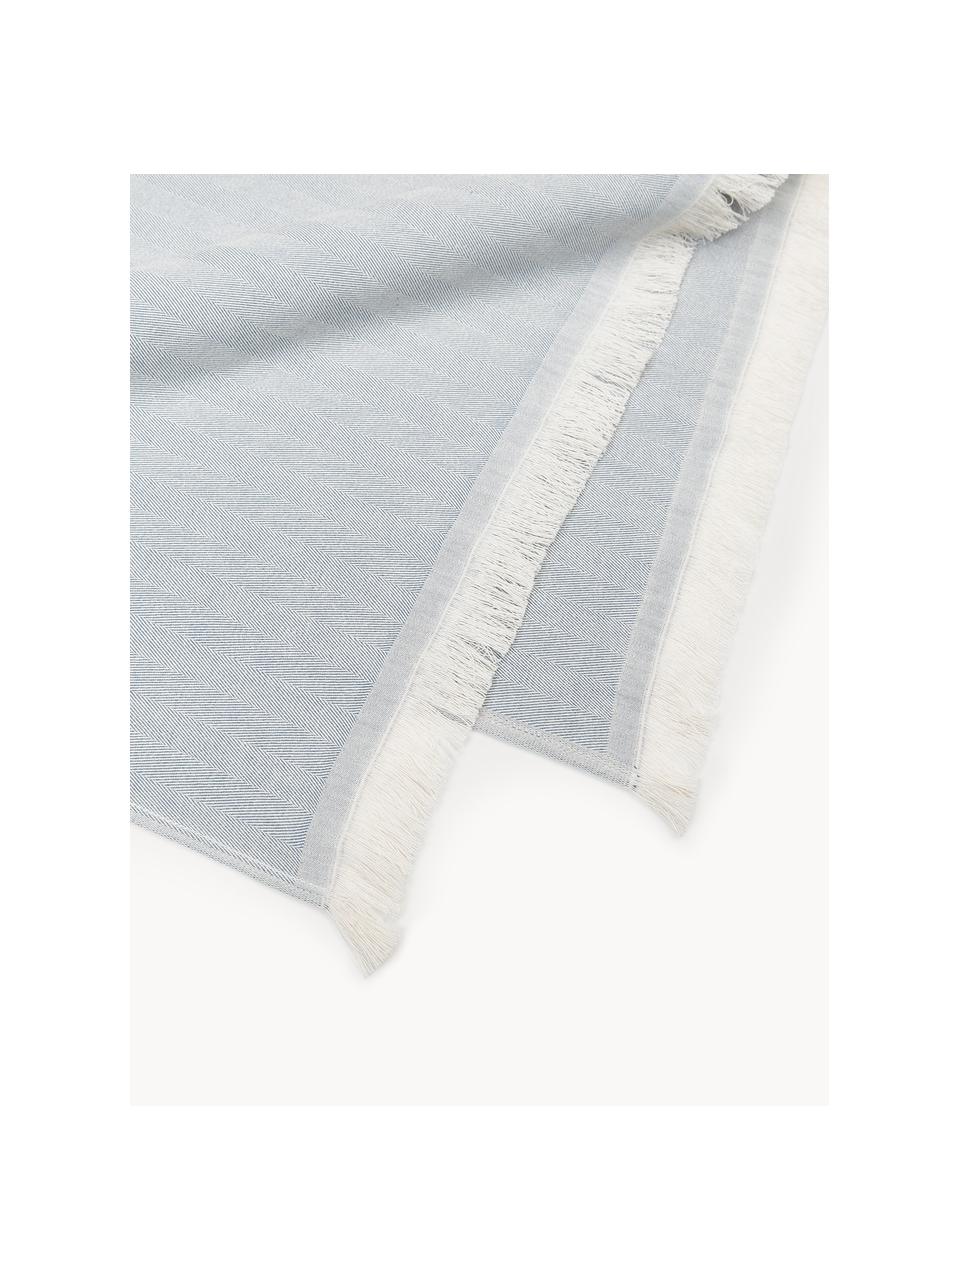 Ręcznik plażowy Indra, Niebieski, złamana biel, S 100 x D 180 cm